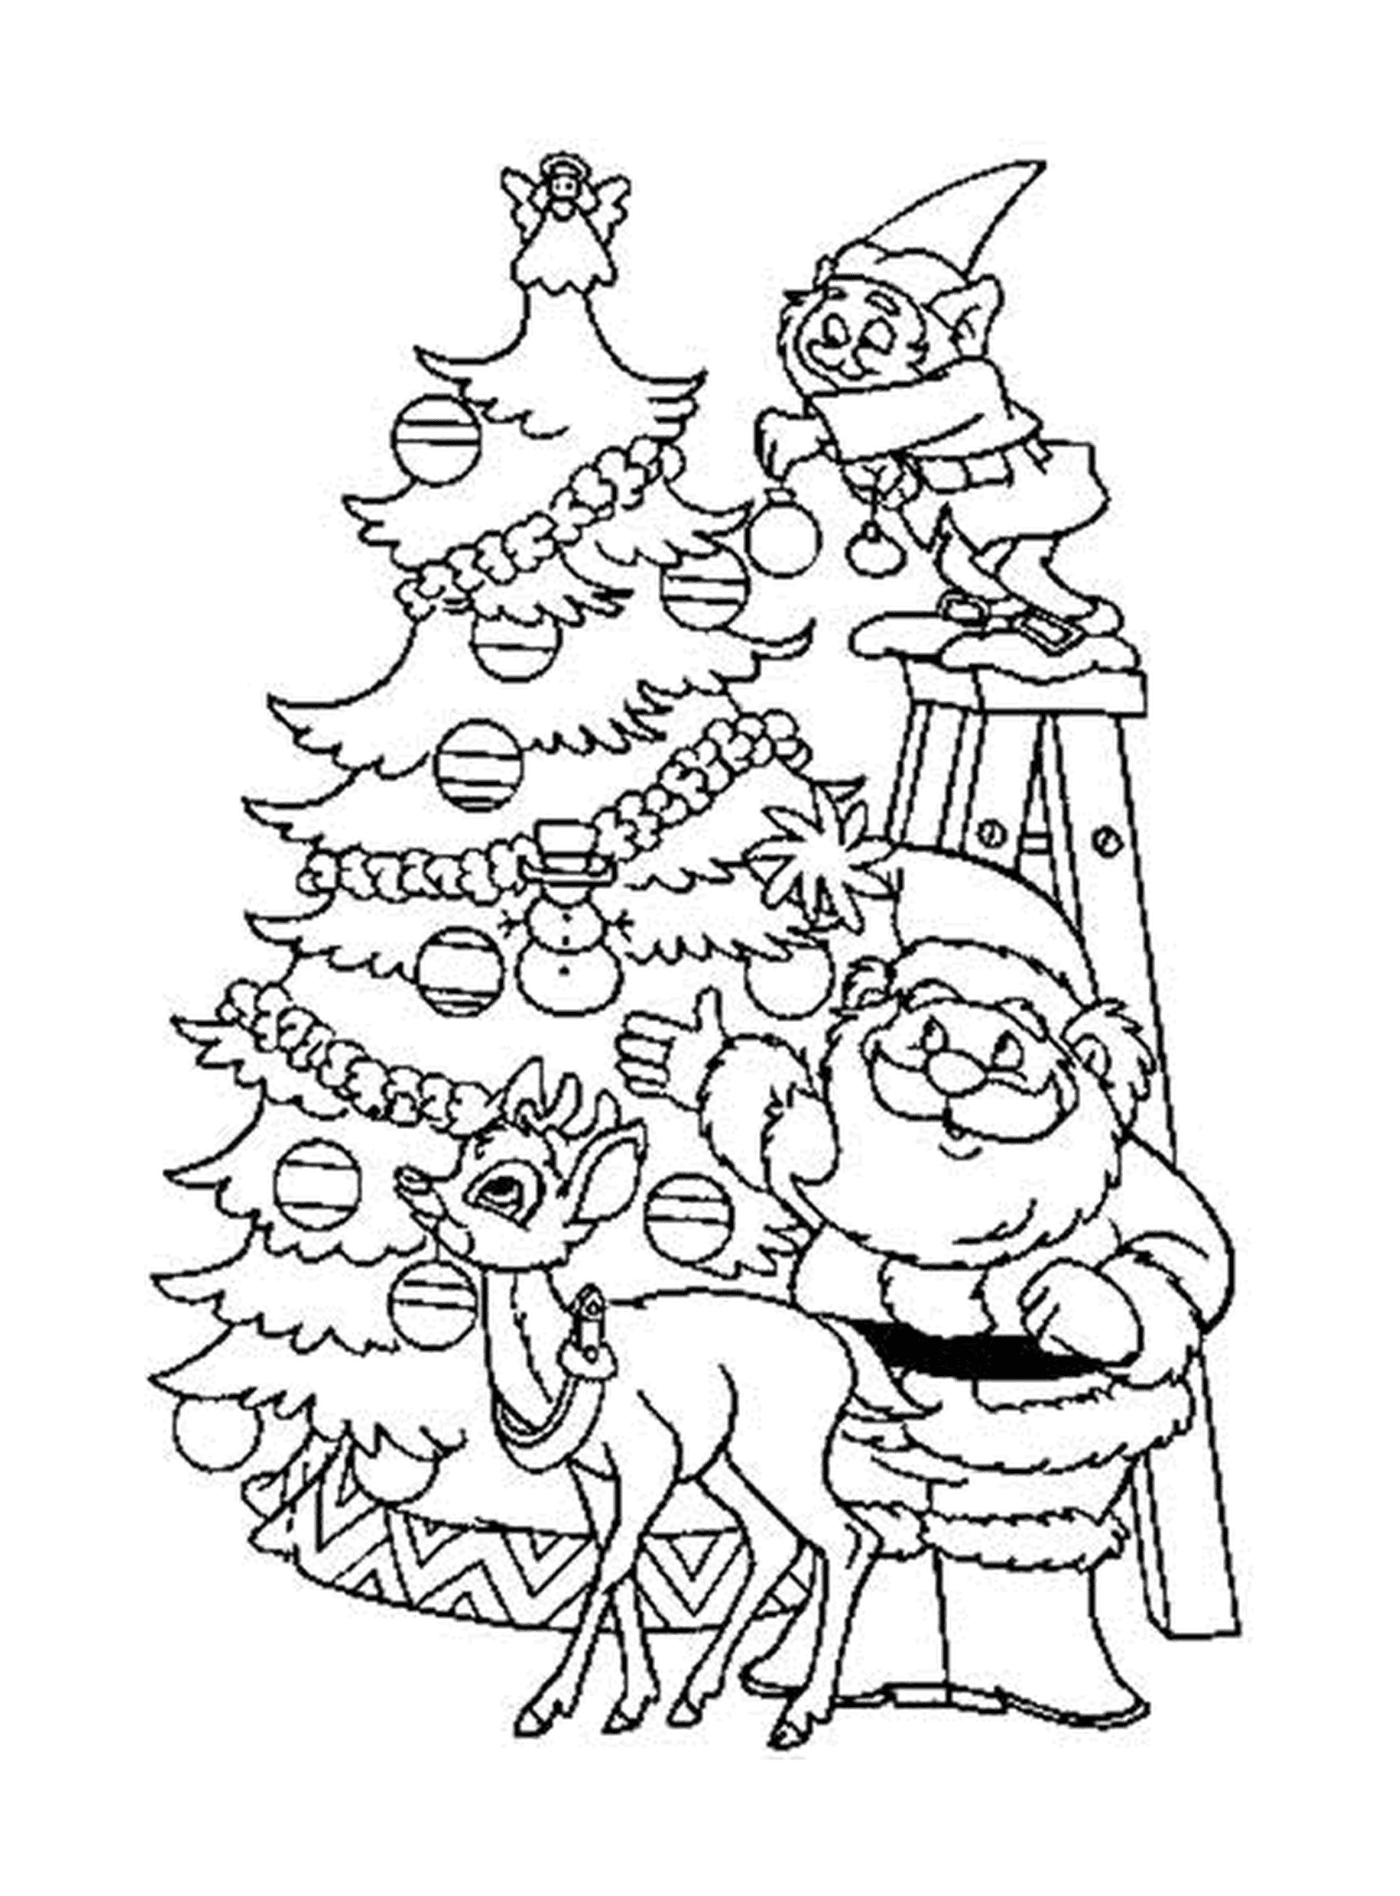  Weihnachtsmann, Rentiere und Elche schmücken einen hübschen Baum 